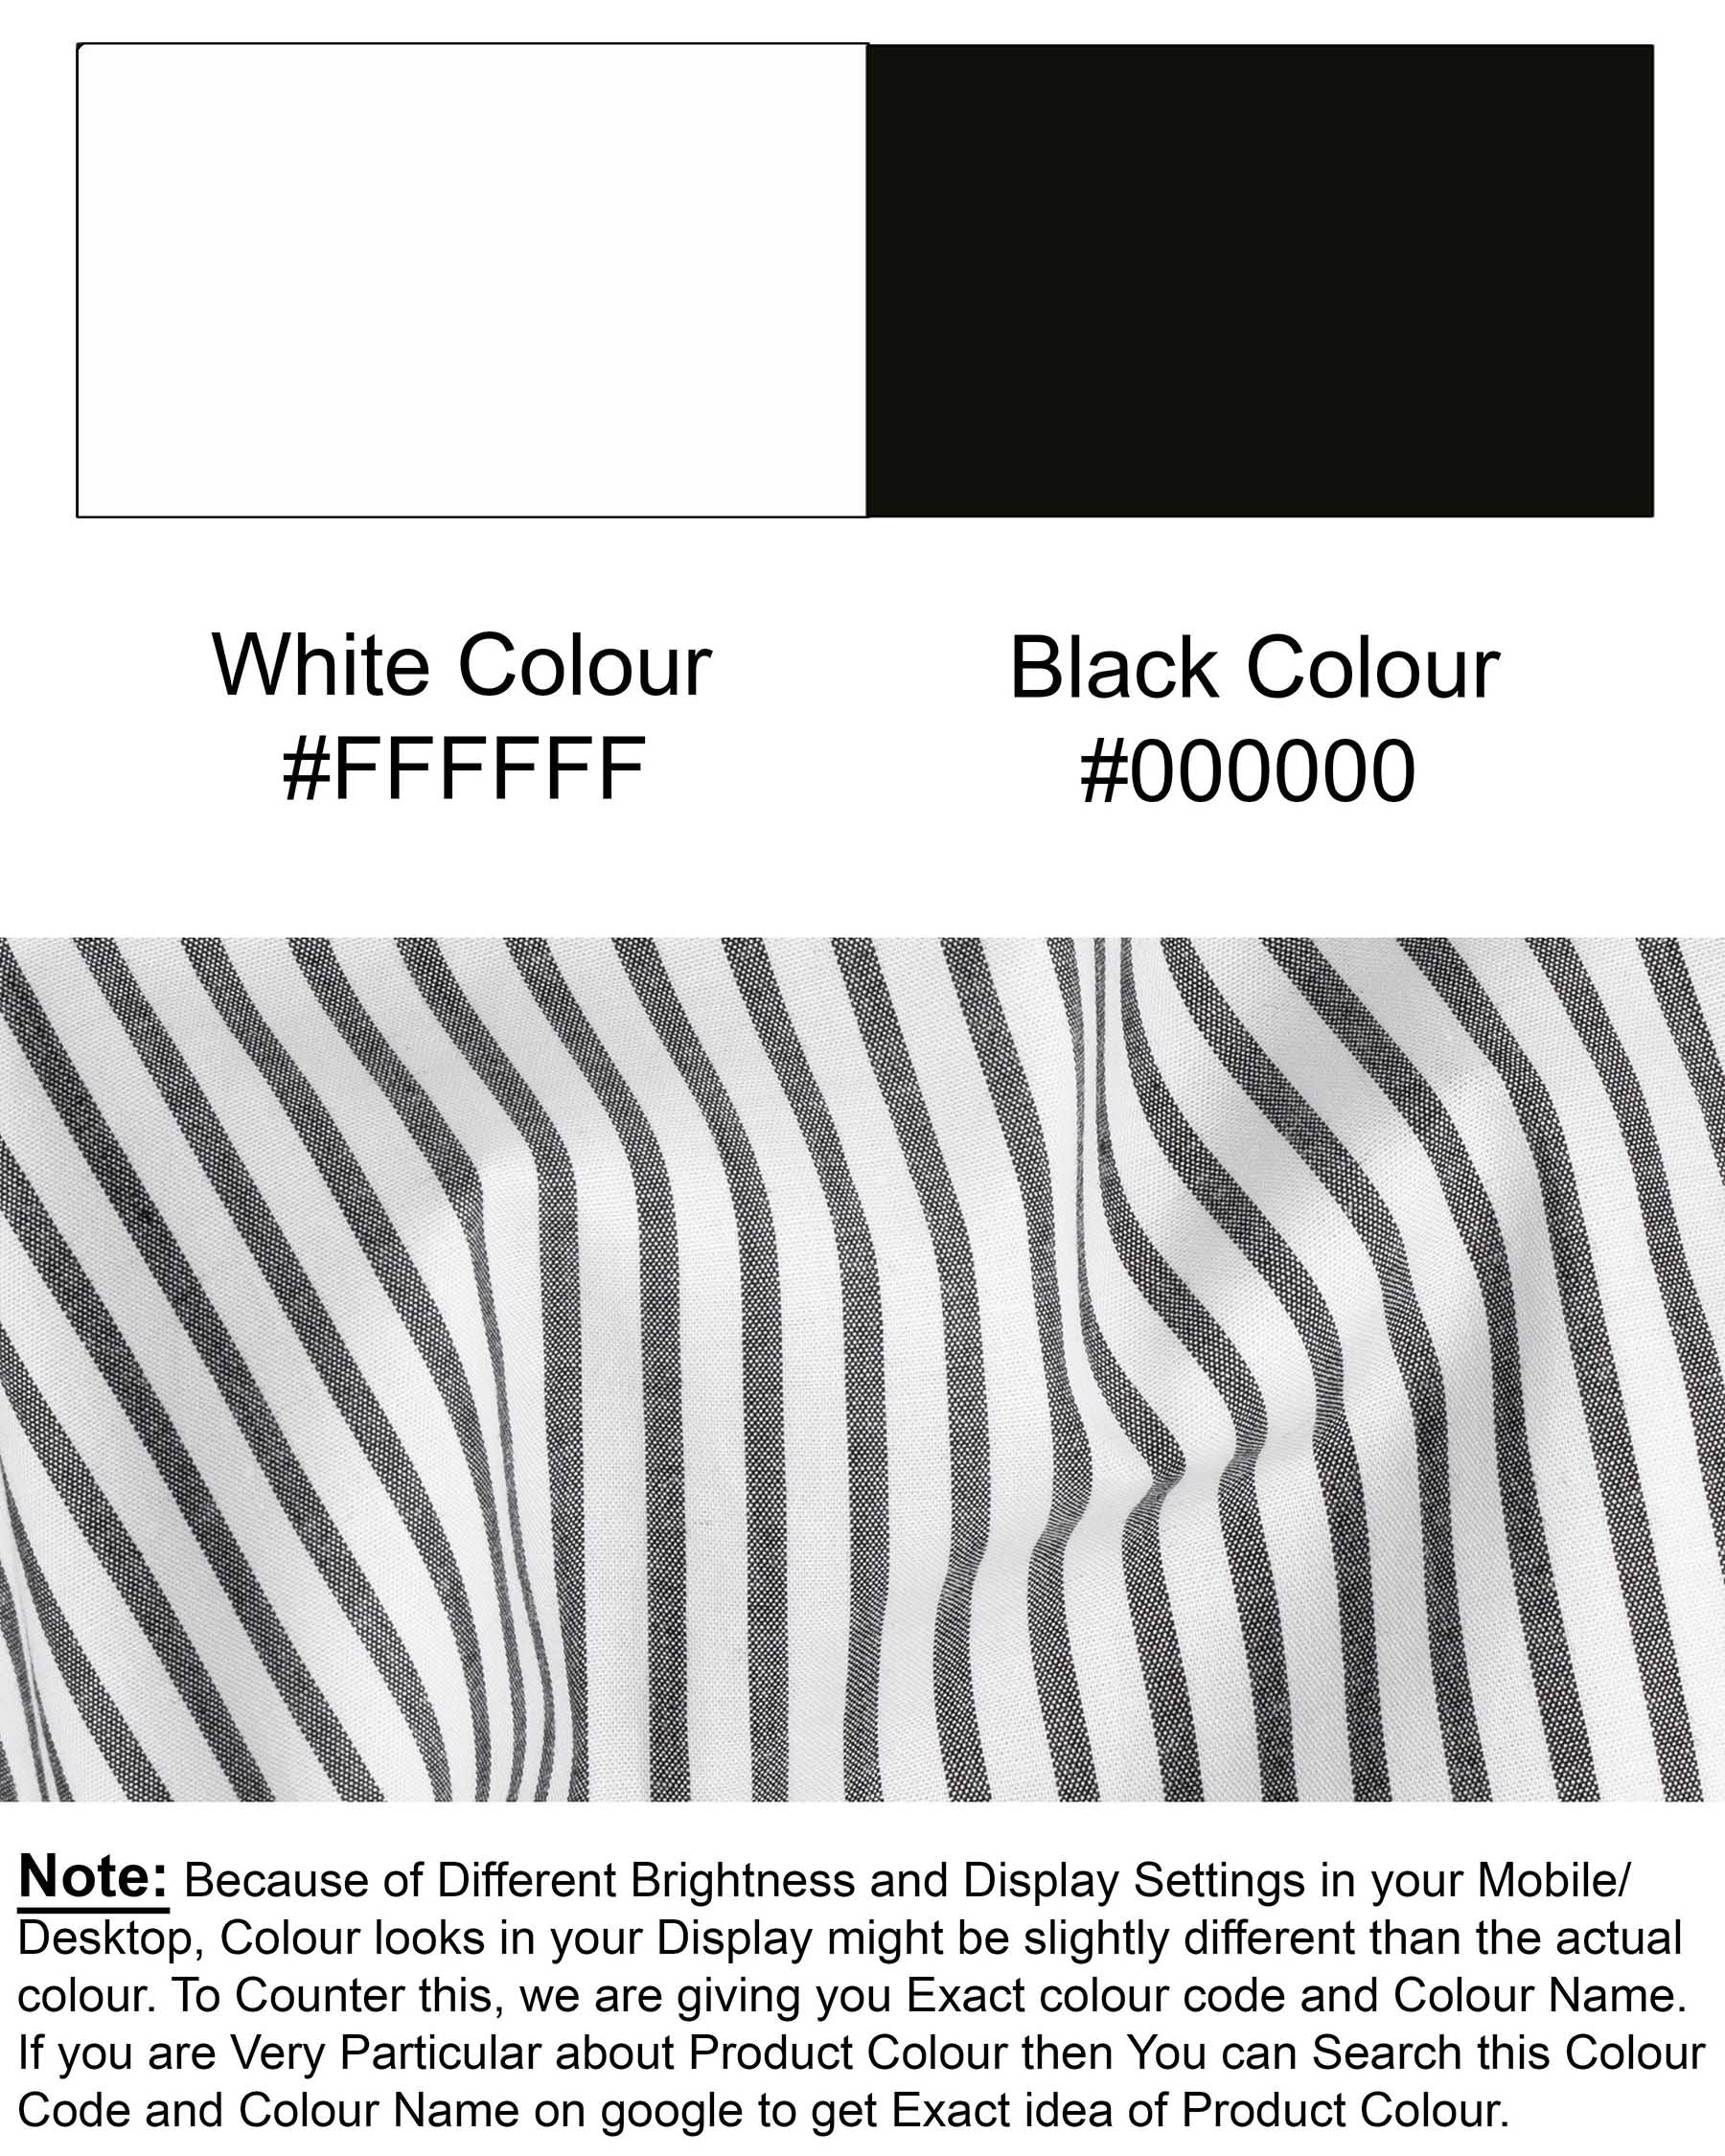 Bright White and Jade Black Striped Premium Cotton Shirt 6142-CA-BLK-38, 6142-CA-BLK-H-38, 6142-CA-BLK-39, 6142-CA-BLK-H-39, 6142-CA-BLK-40, 6142-CA-BLK-H-40, 6142-CA-BLK-42, 6142-CA-BLK-H-42, 6142-CA-BLK-44, 6142-CA-BLK-H-44, 6142-CA-BLK-46, 6142-CA-BLK-H-46, 6142-CA-BLK-48, 6142-CA-BLK-H-48, 6142-CA-BLK-50, 6142-CA-BLK-H-50, 6142-CA-BLK-52, 6142-CA-BLK-H-52